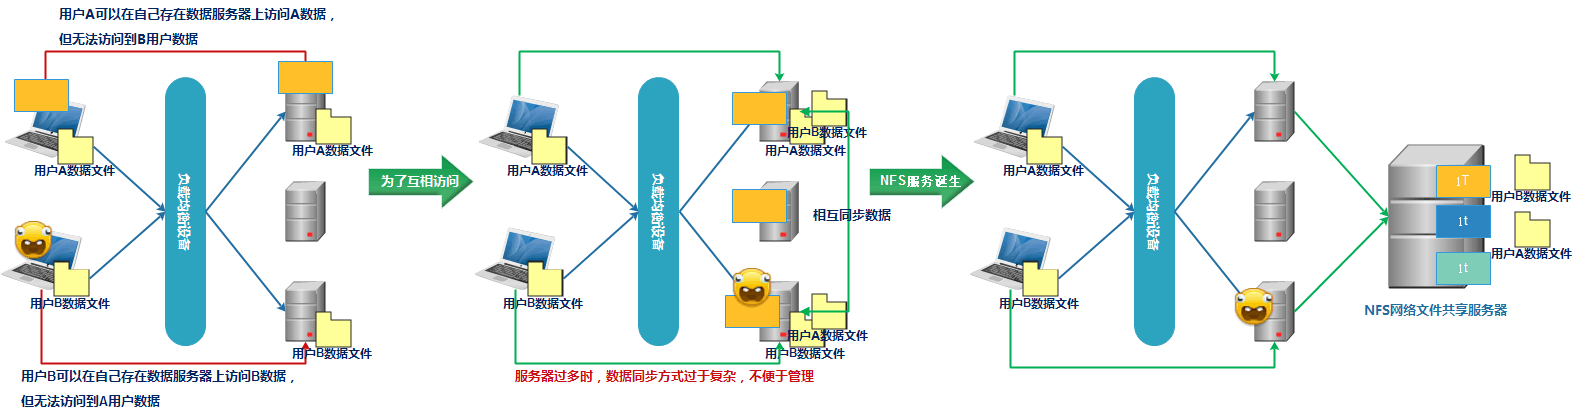 NFS存储服务部署 - 图1